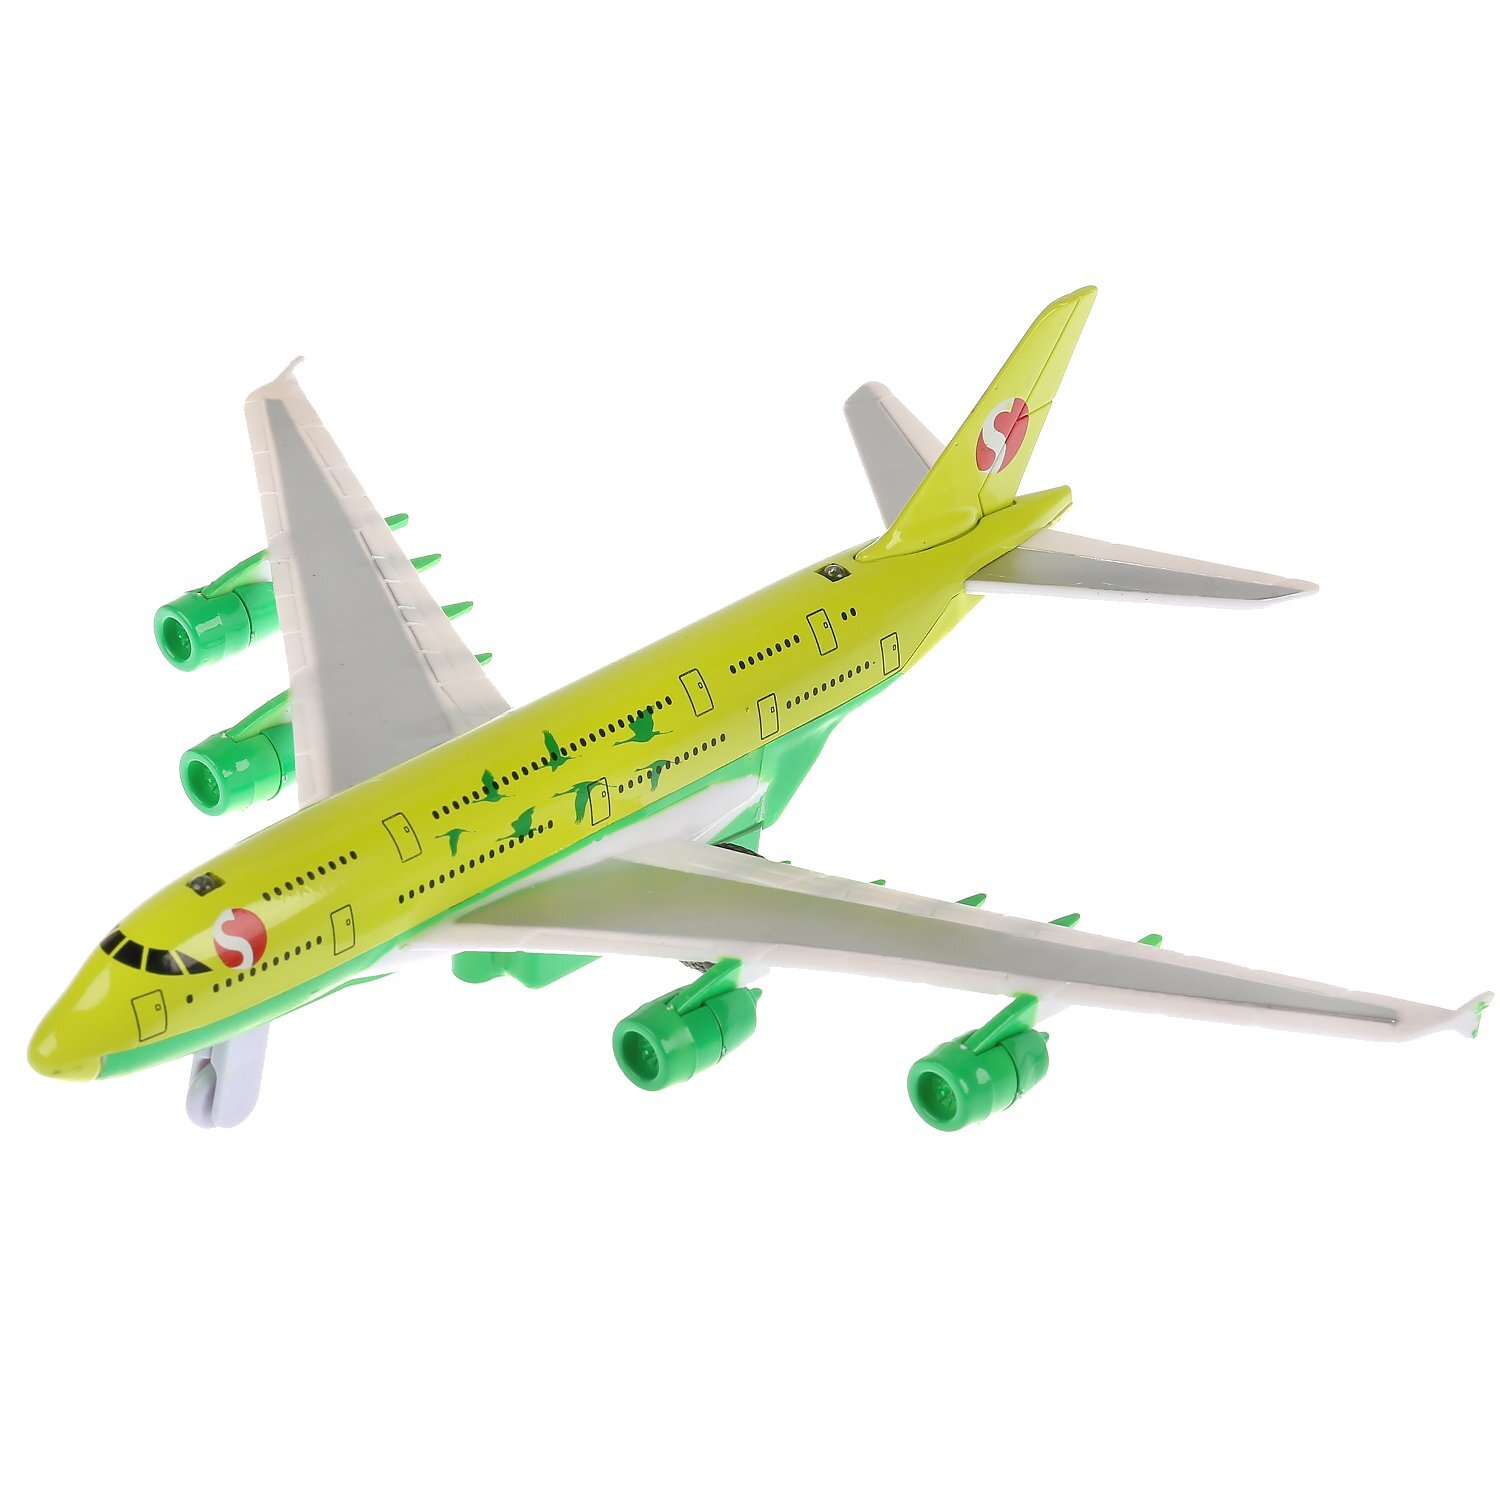 Металлическая модель самолета. Авиалайнер игрушка Технопарк s7 зеленый. Технопарк самолет s7. Игрушка самолет Технопарк s7. Самолет Технопарк s7 (91002s-r-GN) 17 см.